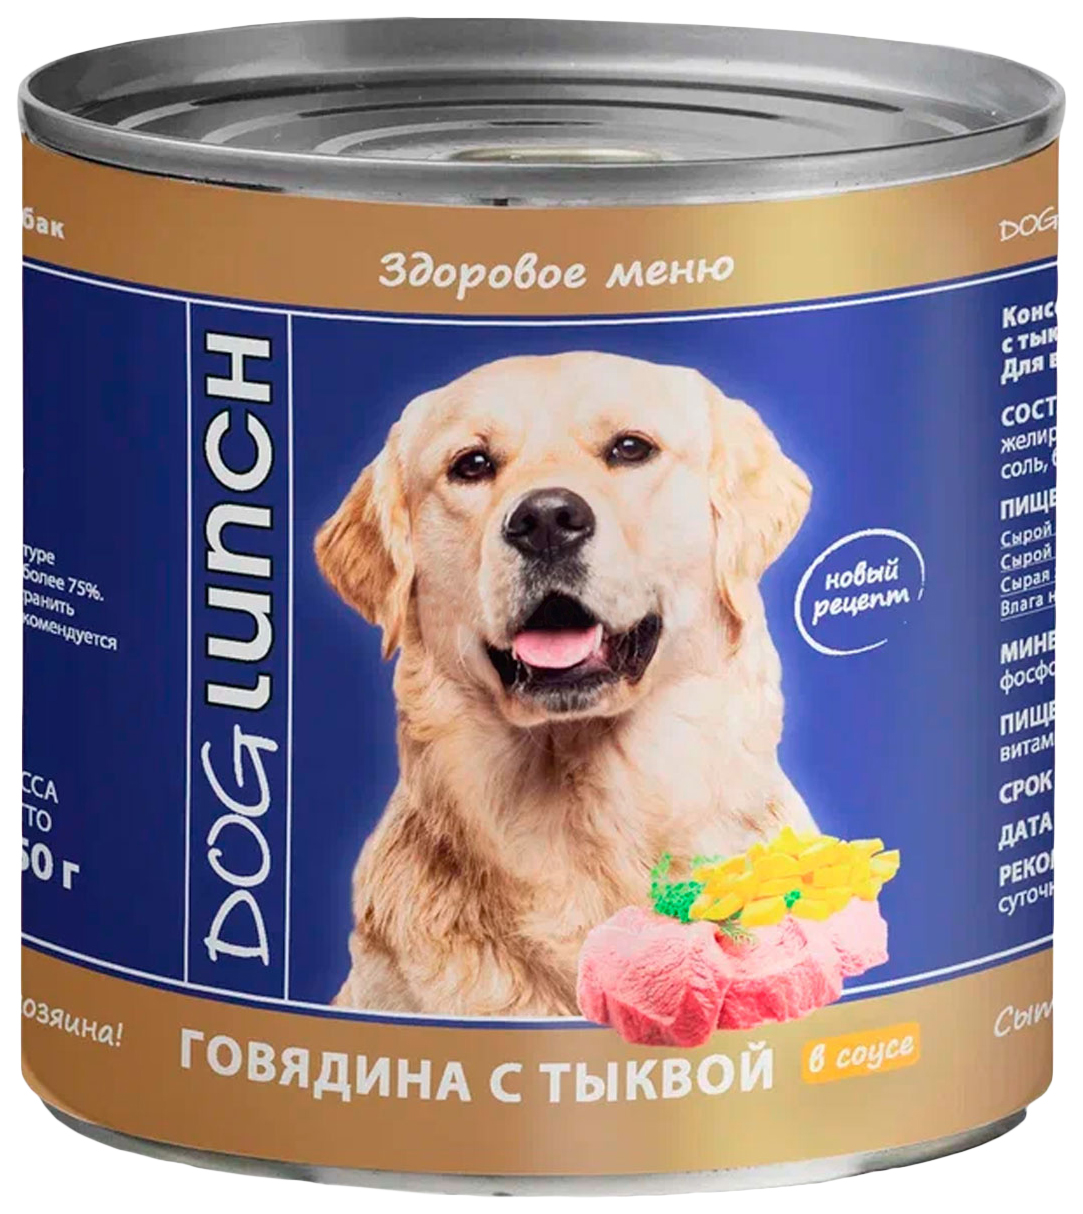 фото Влажный корм для собак дог ланч doglunch, говядина, тыква, 9шт, 750г dog lunch